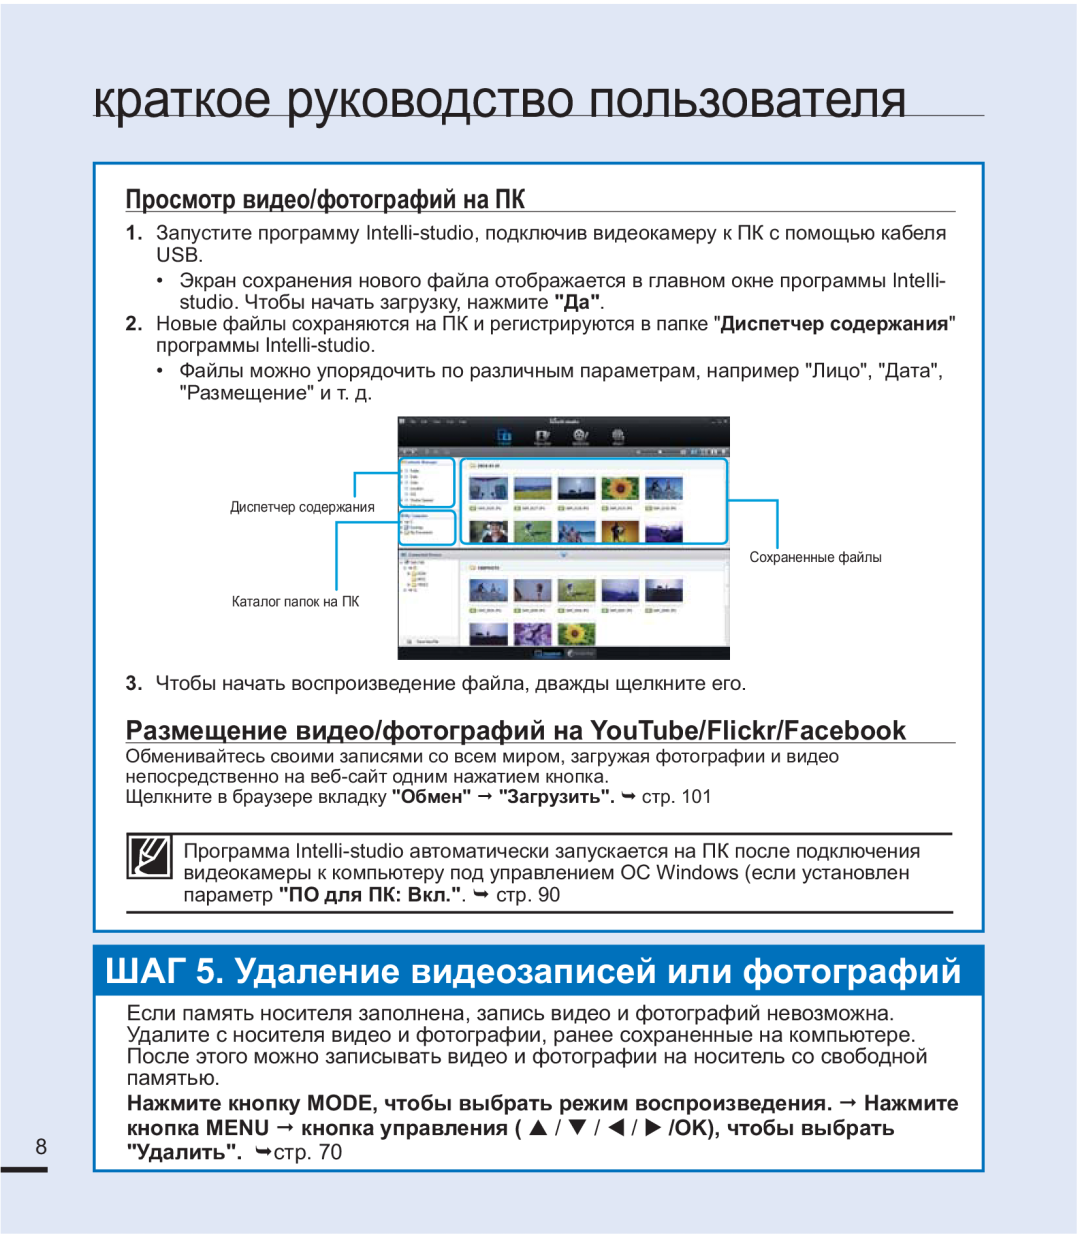 Samsung SMX-F40SP/XER, SMX-F44BP/EDC manual ɒȺȽɍɞɚɥɟɧɢɟɜɢɞɟɨɡɚɩɢɫɟɣɢɥɢɮɨɬɨɝɪɚɮɢɣ, ɉɪɨɫɦɨɬɪɜɢɞɟɨɮɨɬɨɝɪɚɮɢɣɧɚɉɄ 